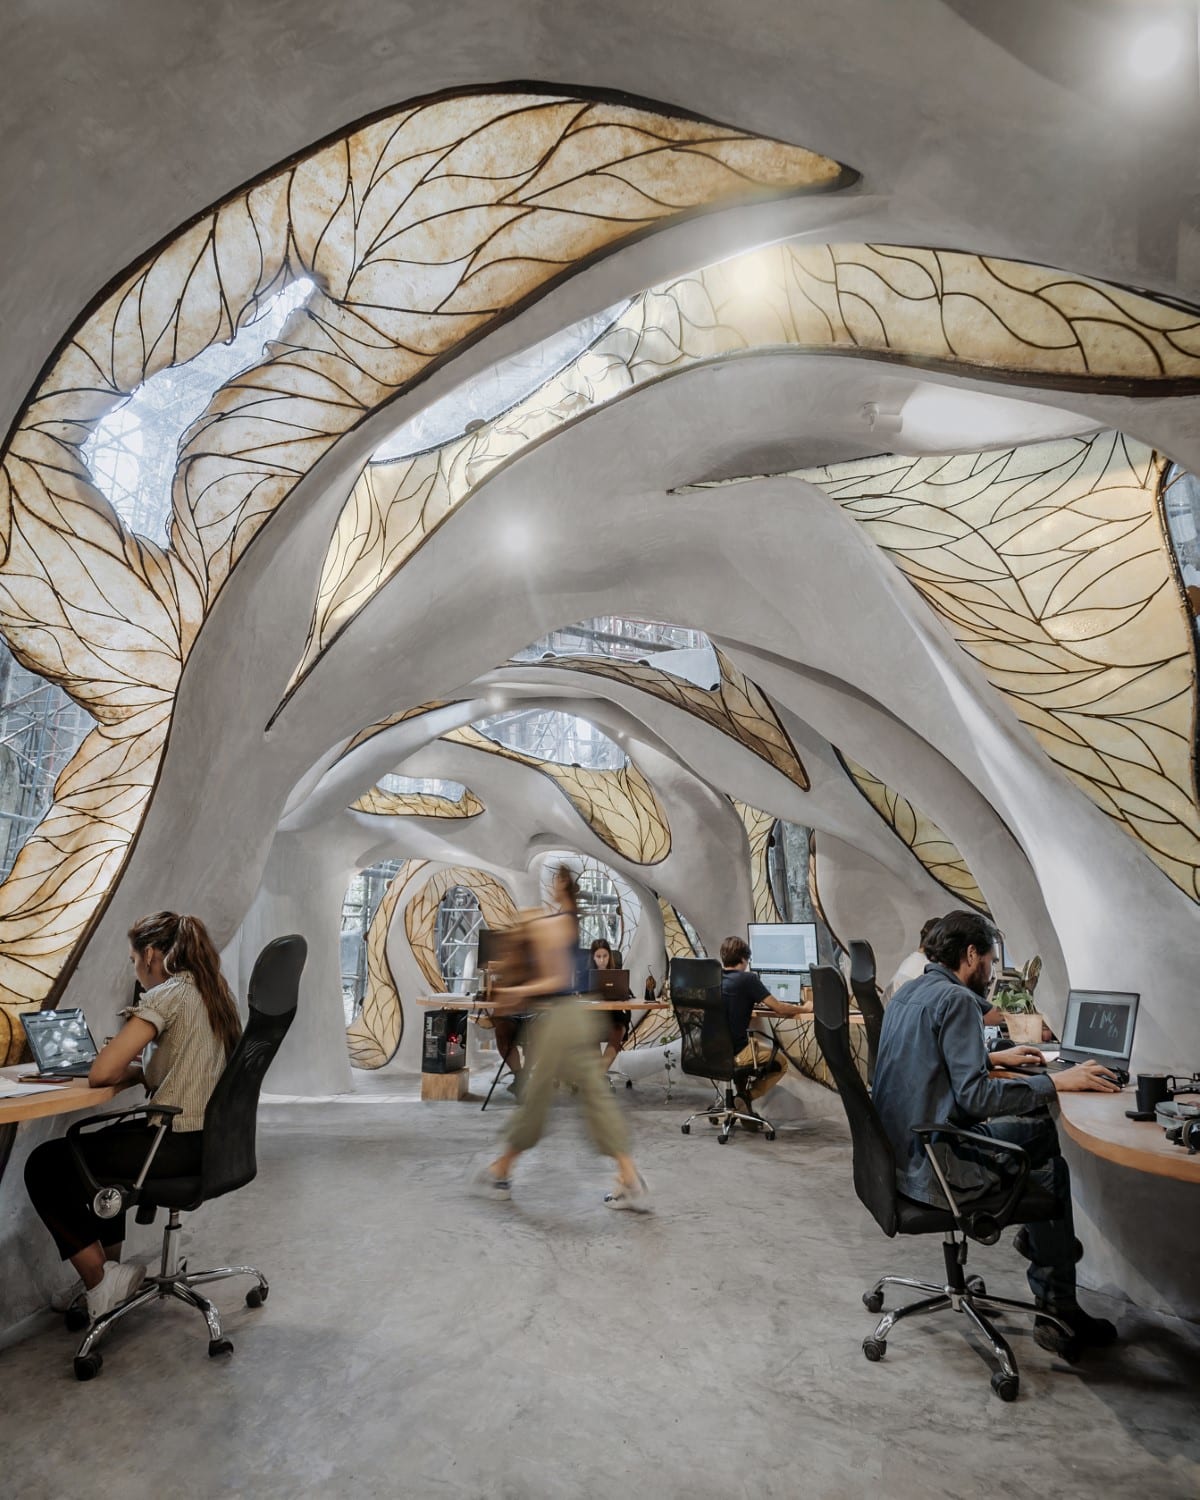 Μια εταιρεία κατασκευάζει γραφεία με οργανικό σχήμα στην καρδιά της ζούγκλας των Μάγια